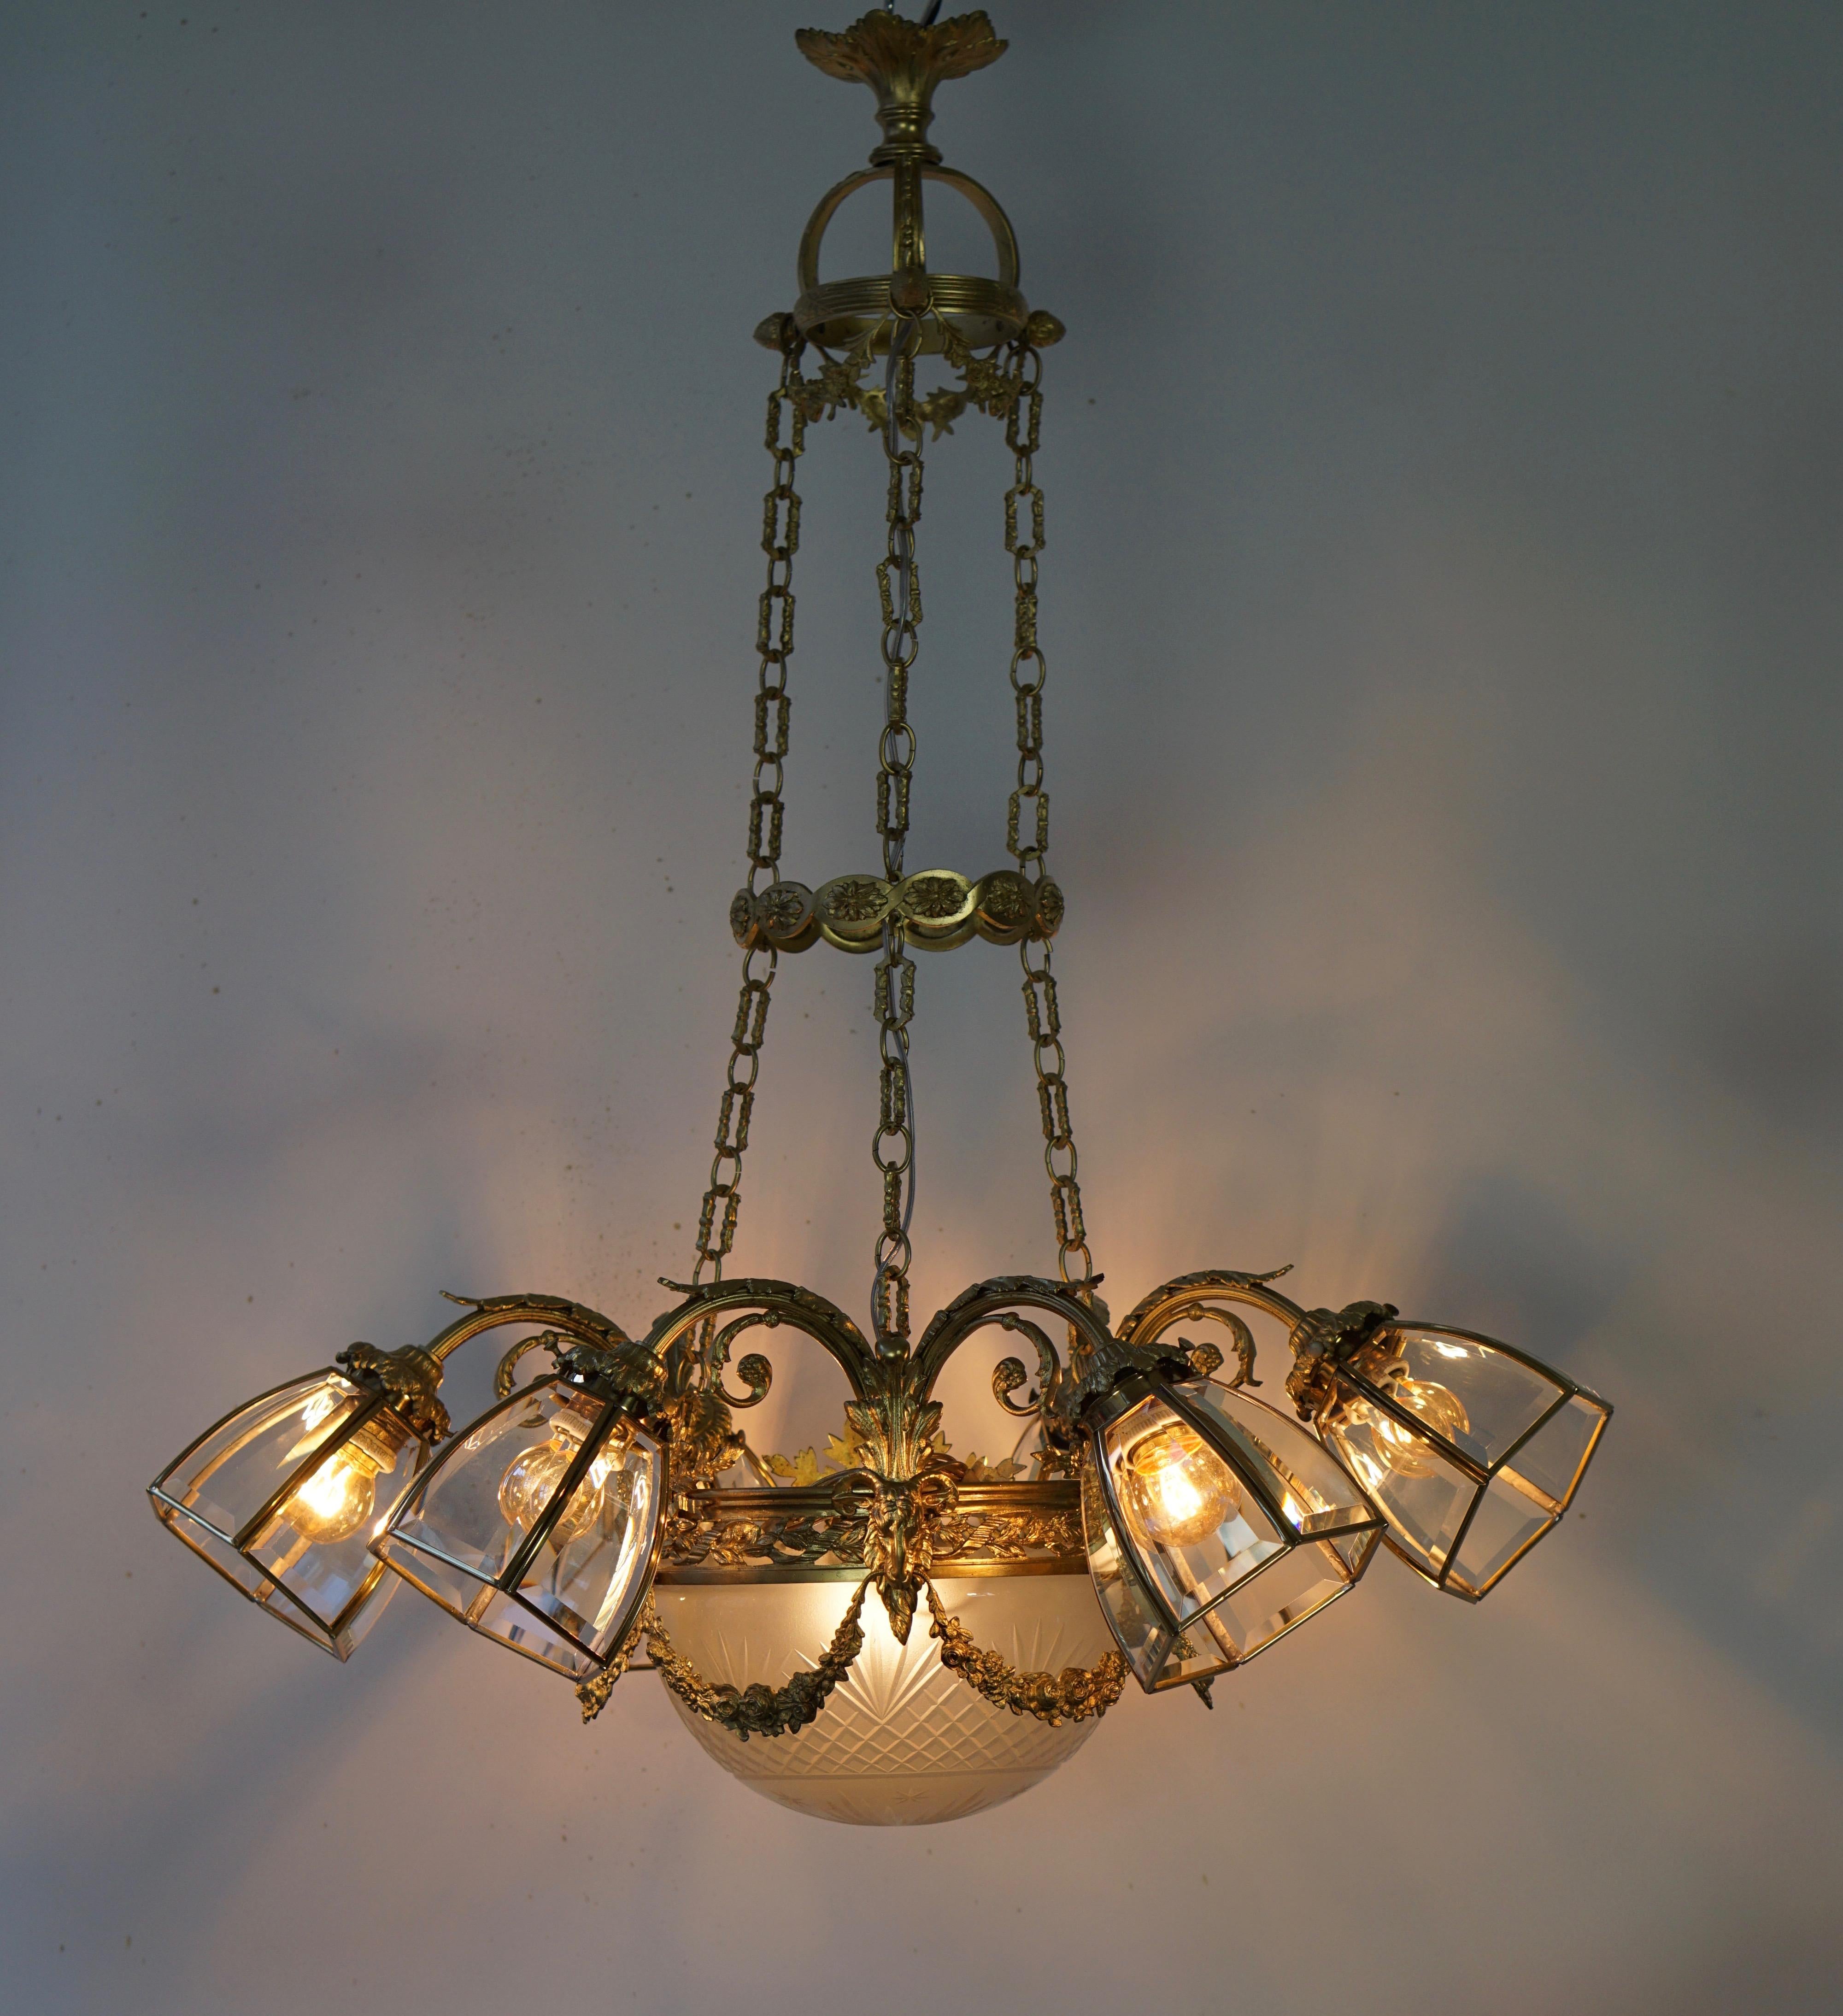 Viktorianischer Kronleuchter aus vergoldeter Bronze mit sechs Lichtern.
Maße: Durchmesser 75 cm.
Höhe 90 cm.
Sechs E27-Glühbirnen.